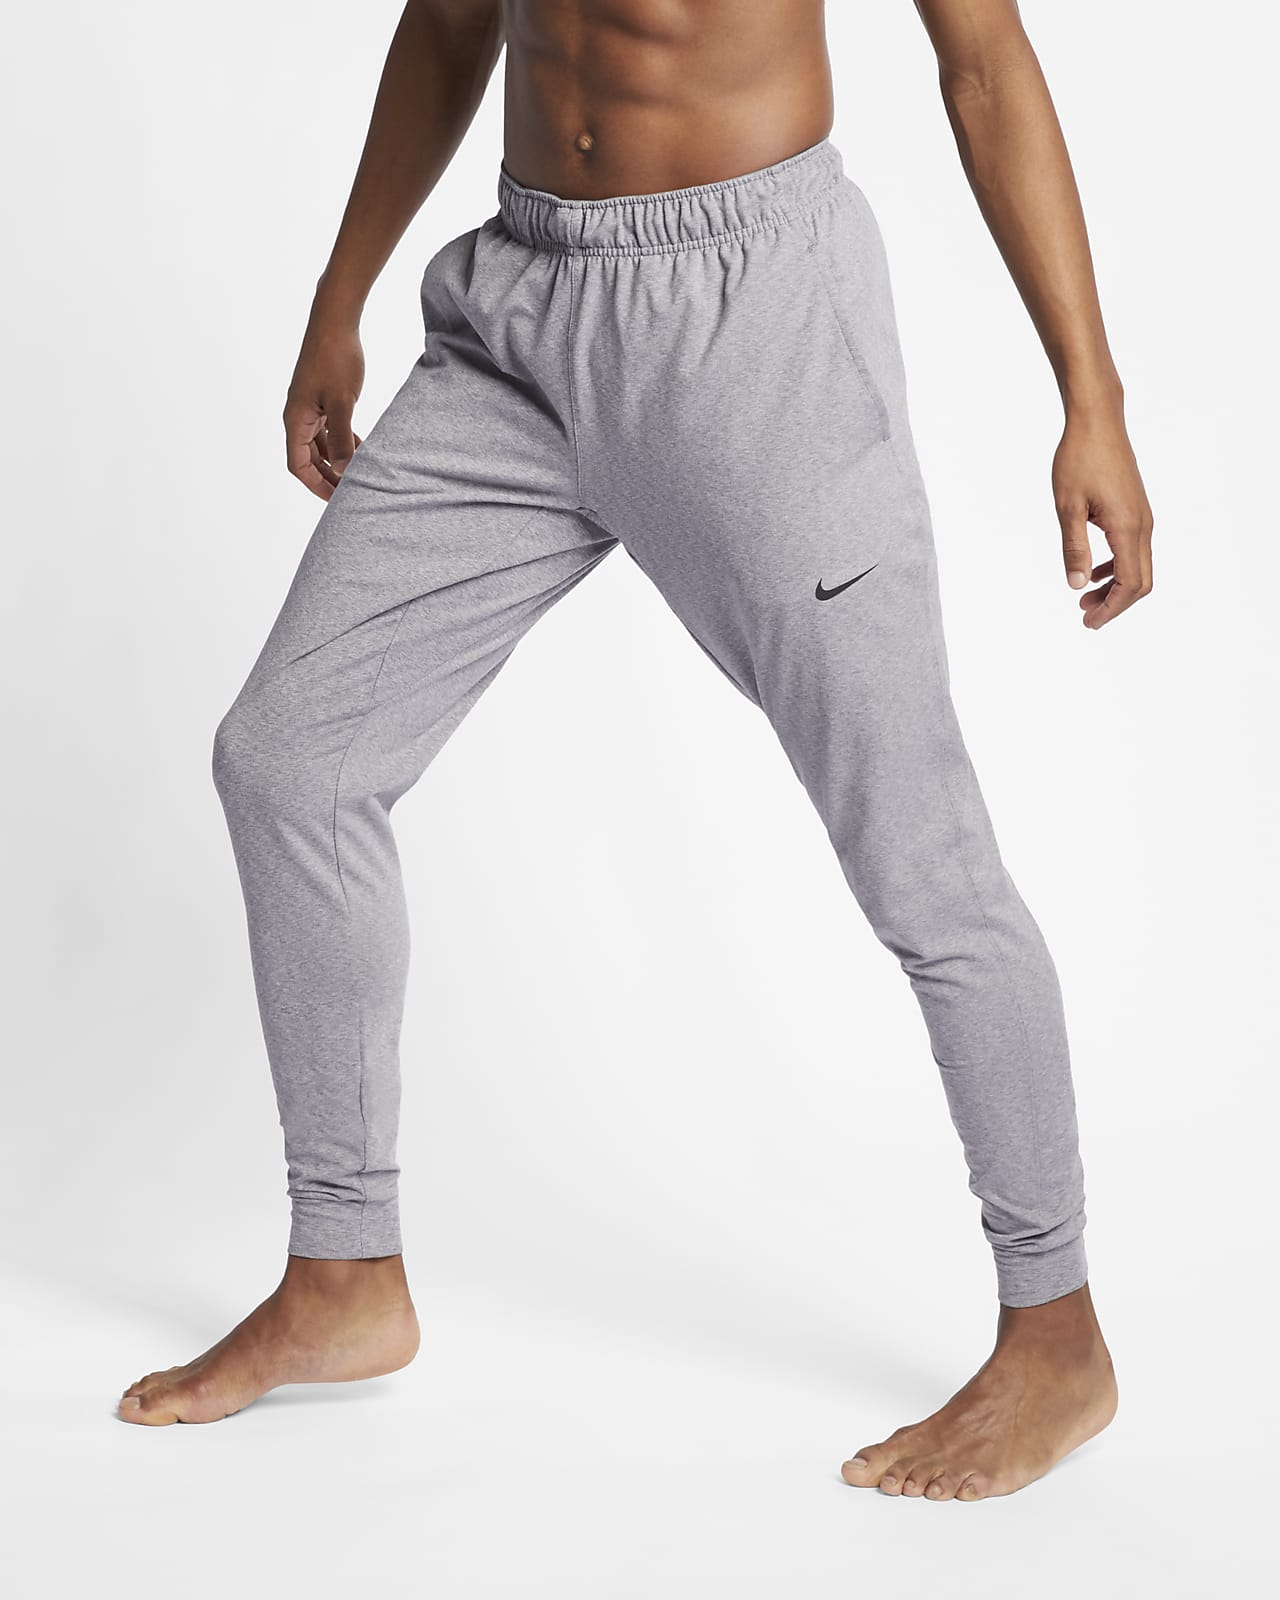 Nike Dri-FIT Men's Yoga Training 